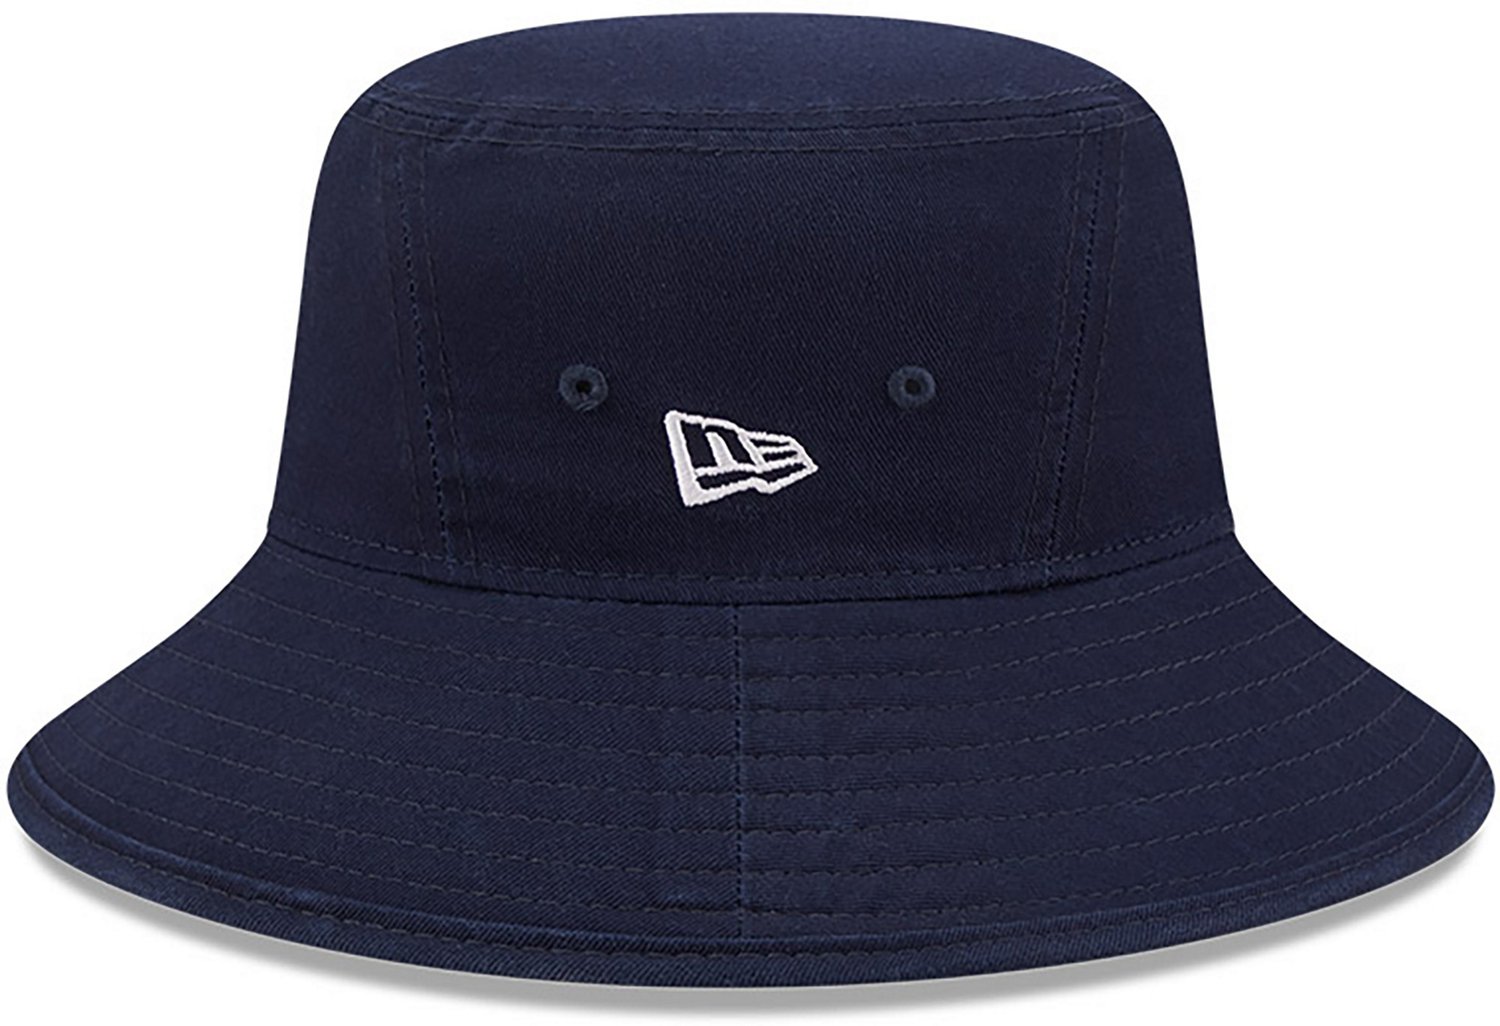 Dallas Cowboys Bucket Hats, Cowboys Fishing Hat, Bucket Hat